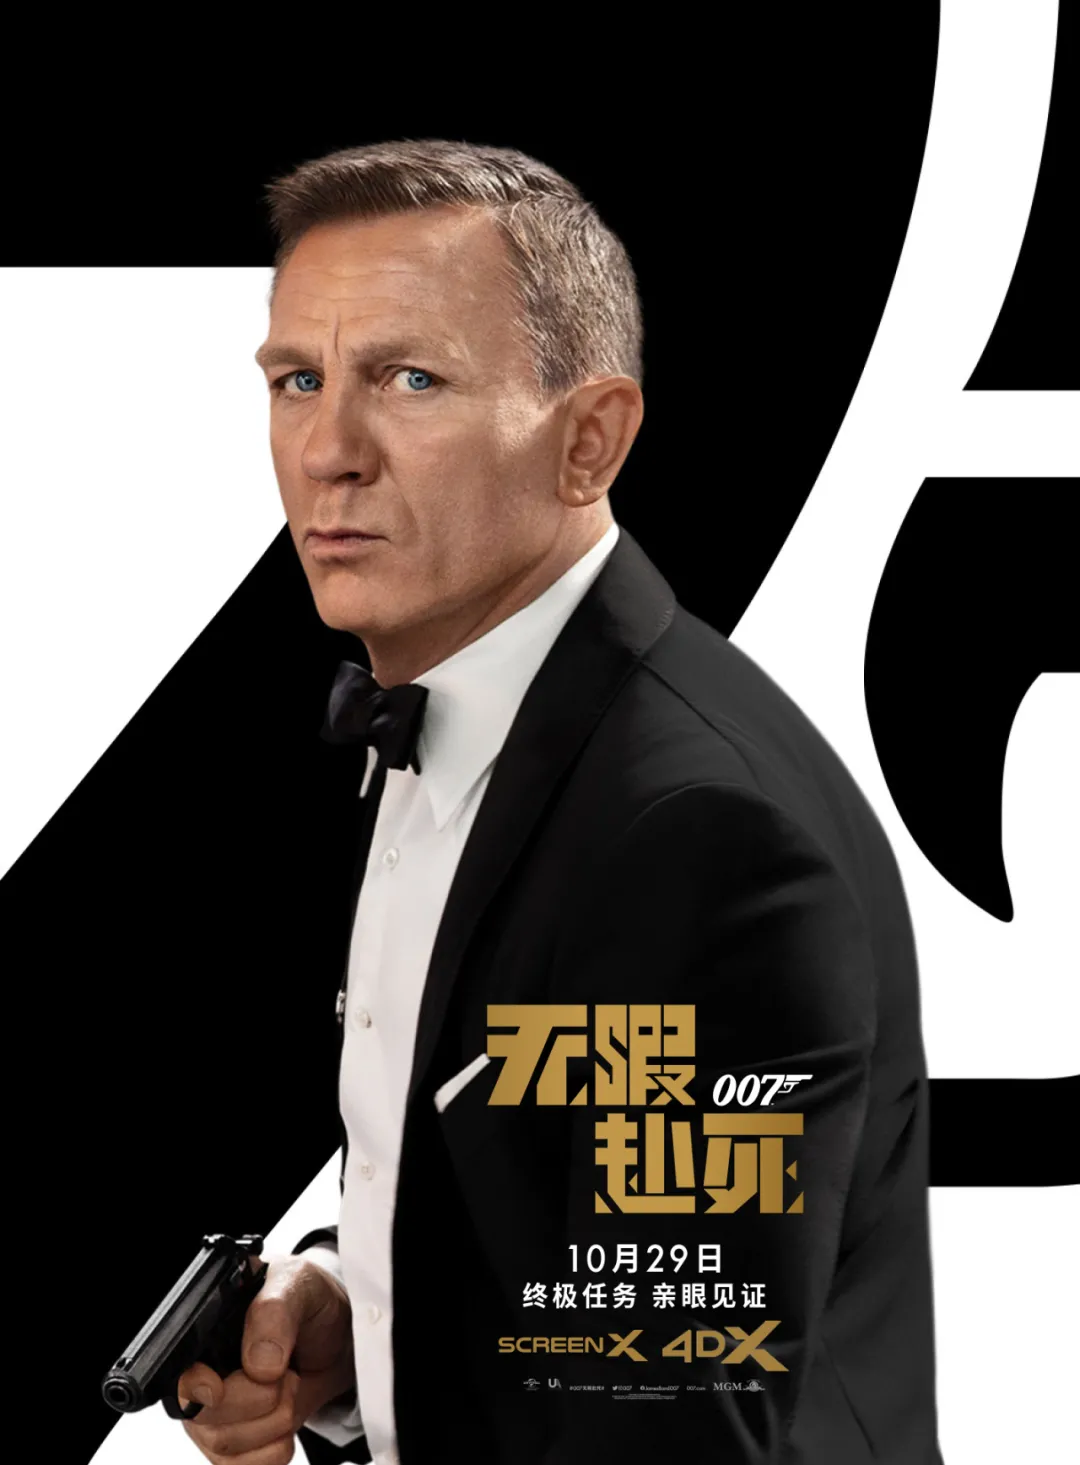 来4DXScreen看《007：无暇赴死》与克雷格奔赴这场最后的浪漫冒险